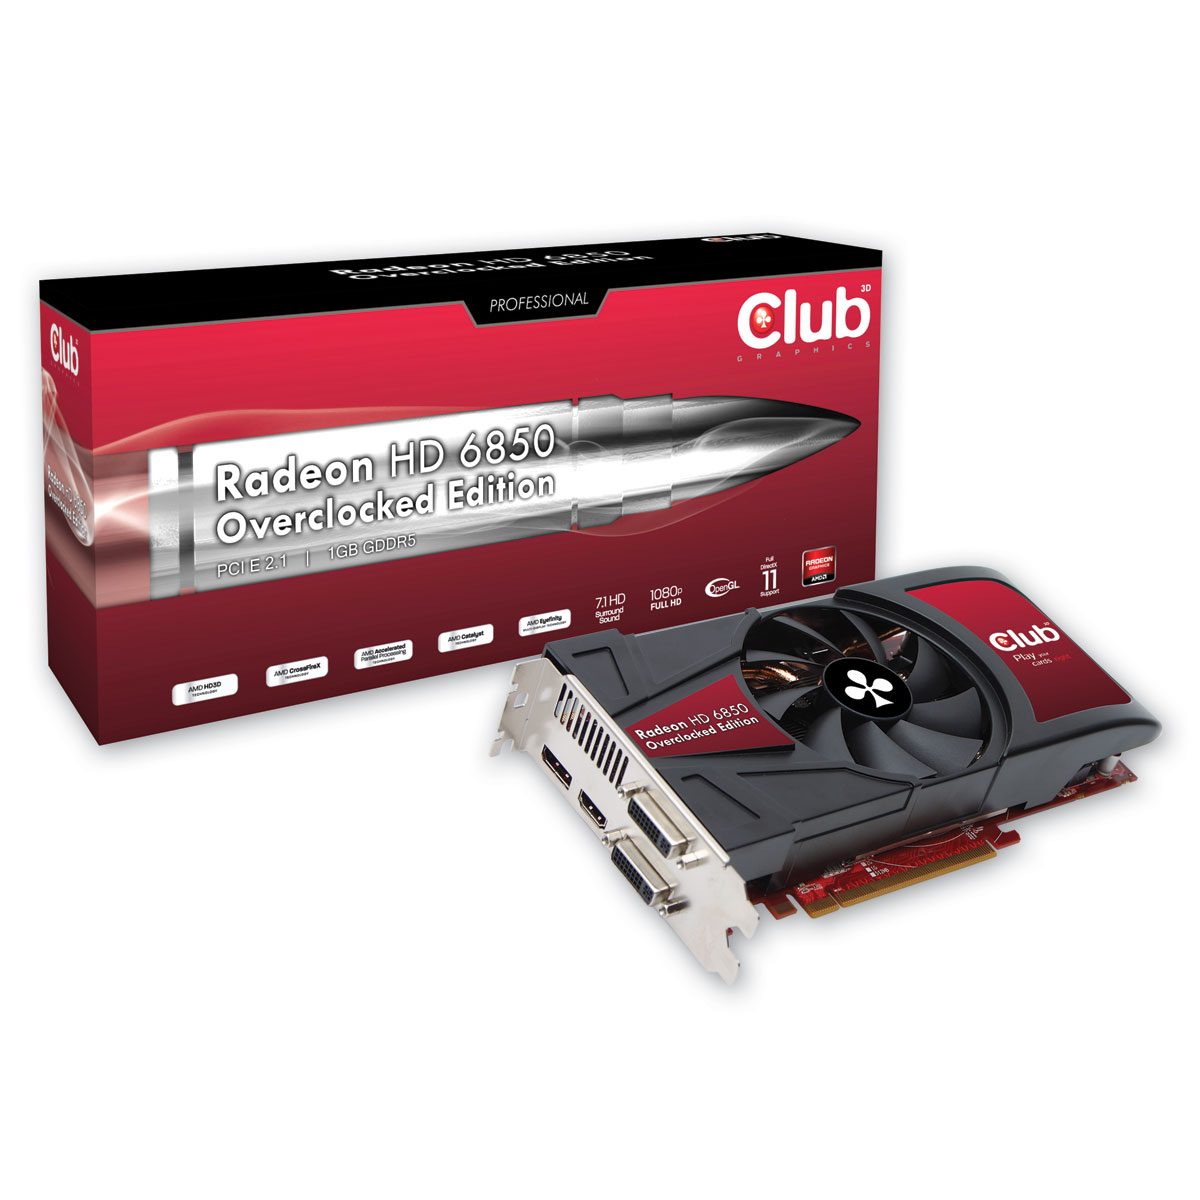 Immagine pubblicata in relazione al seguente contenuto: Club 3D lancia la Radeon HD 6850 1GB GDDR5 Overclocked | Nome immagine: news14141_2.jpg